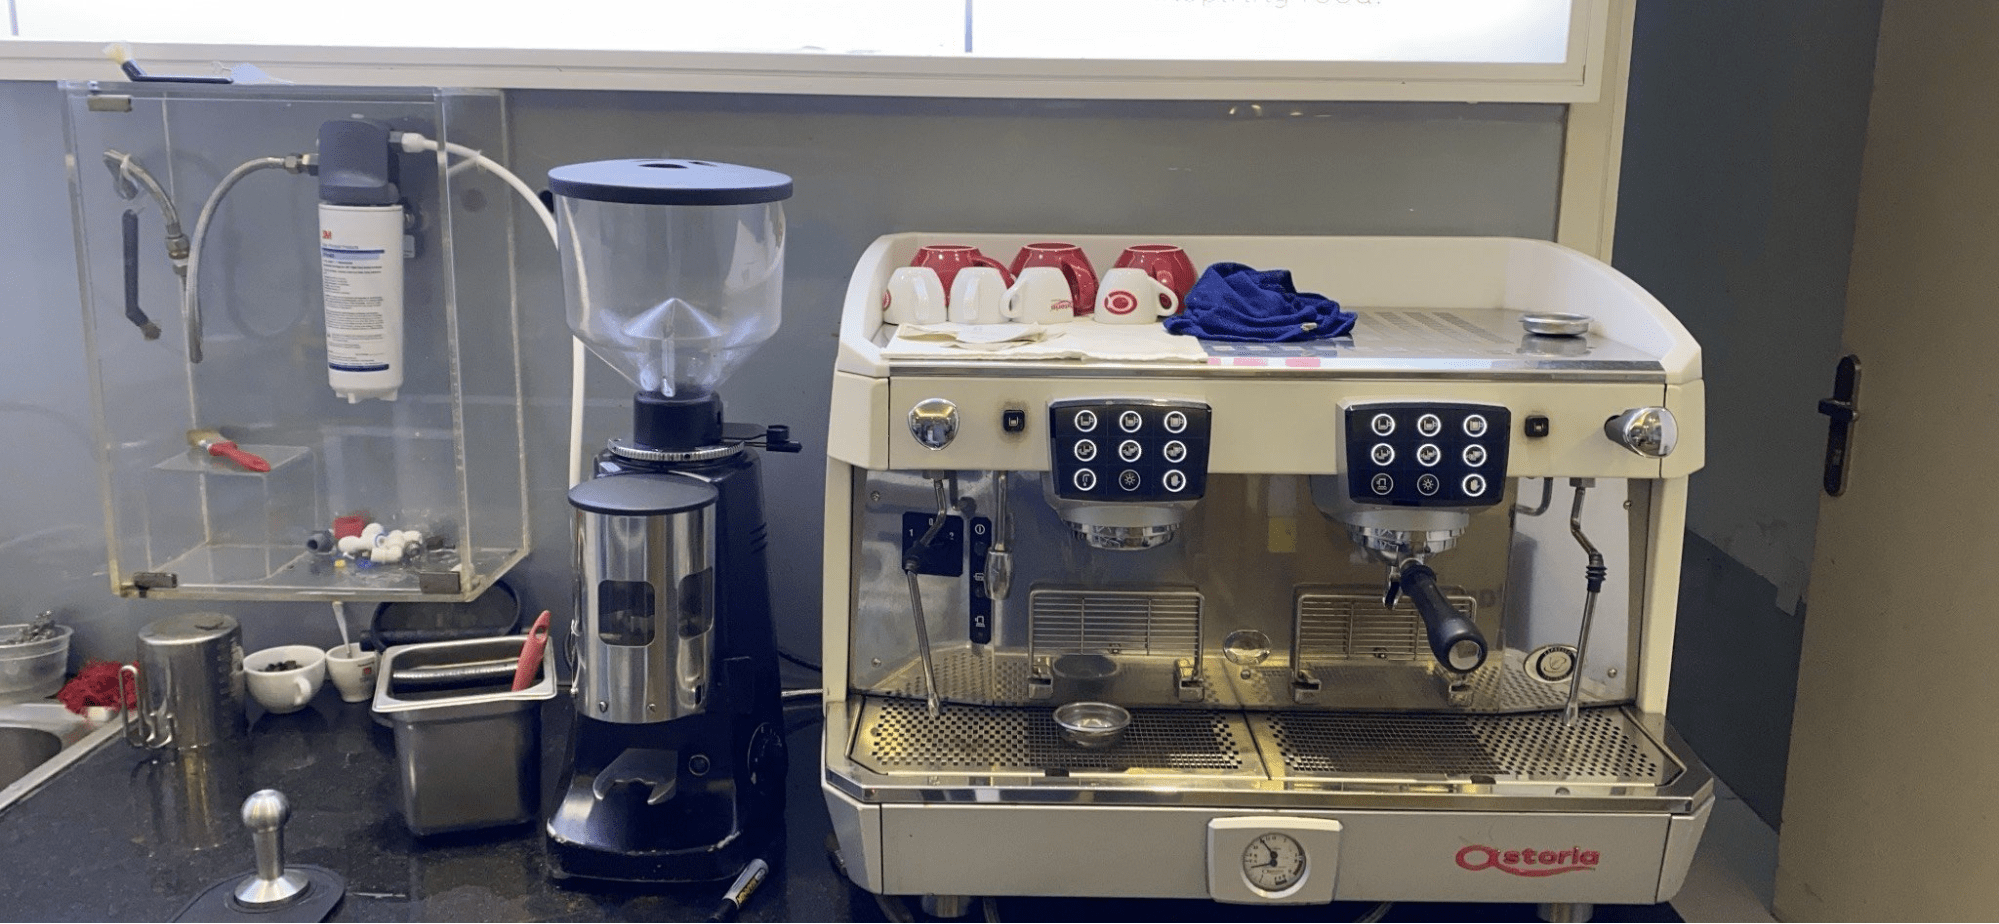 Hình ảnh lắp đặt thực tế của máy lọc nước 3M vào máy cà phê